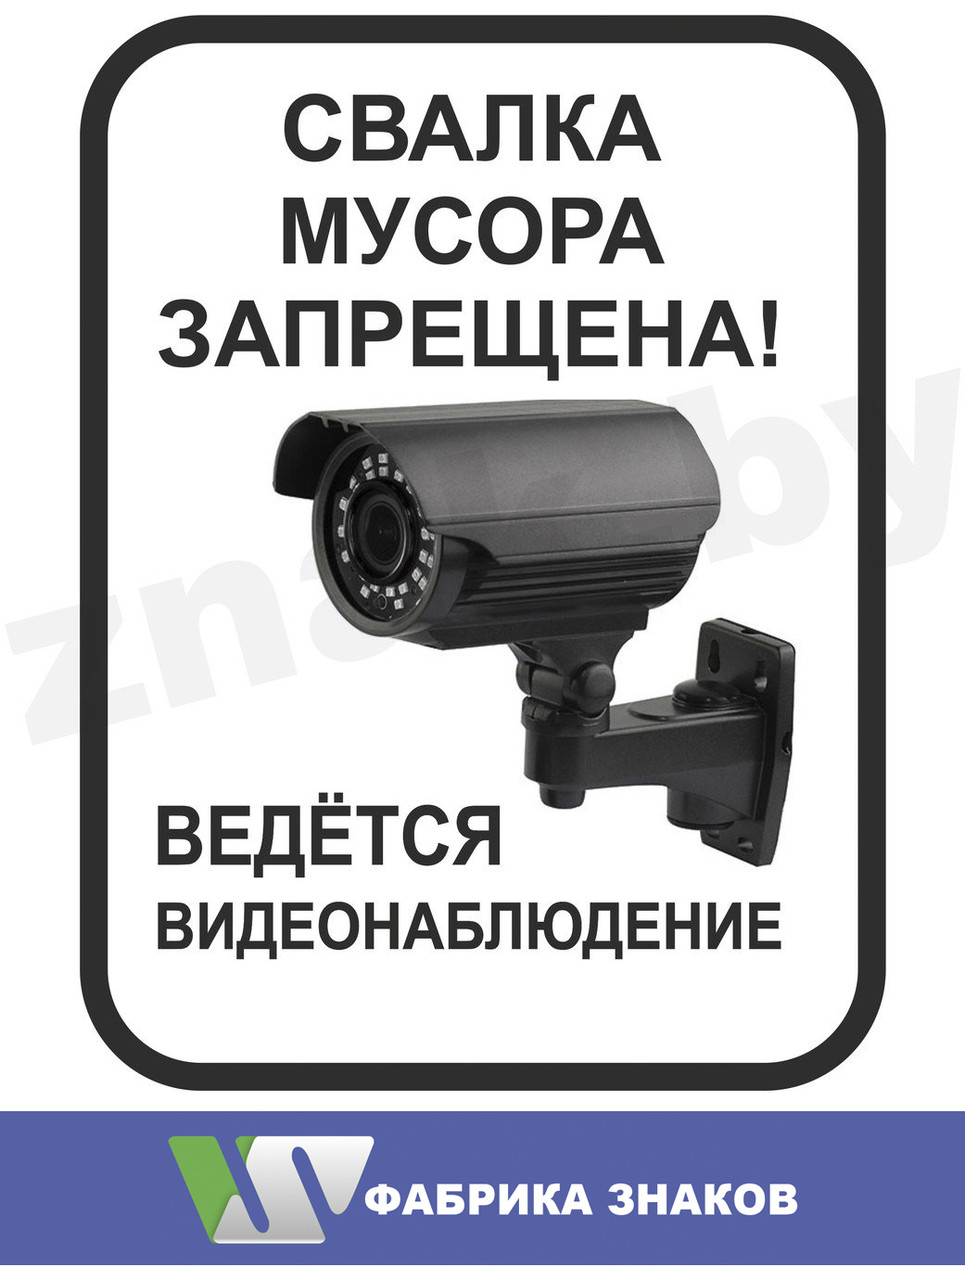 Наклейка "Свалка мусора запрещена! Ведется видеонаблюдение". Тип 2, фото 1